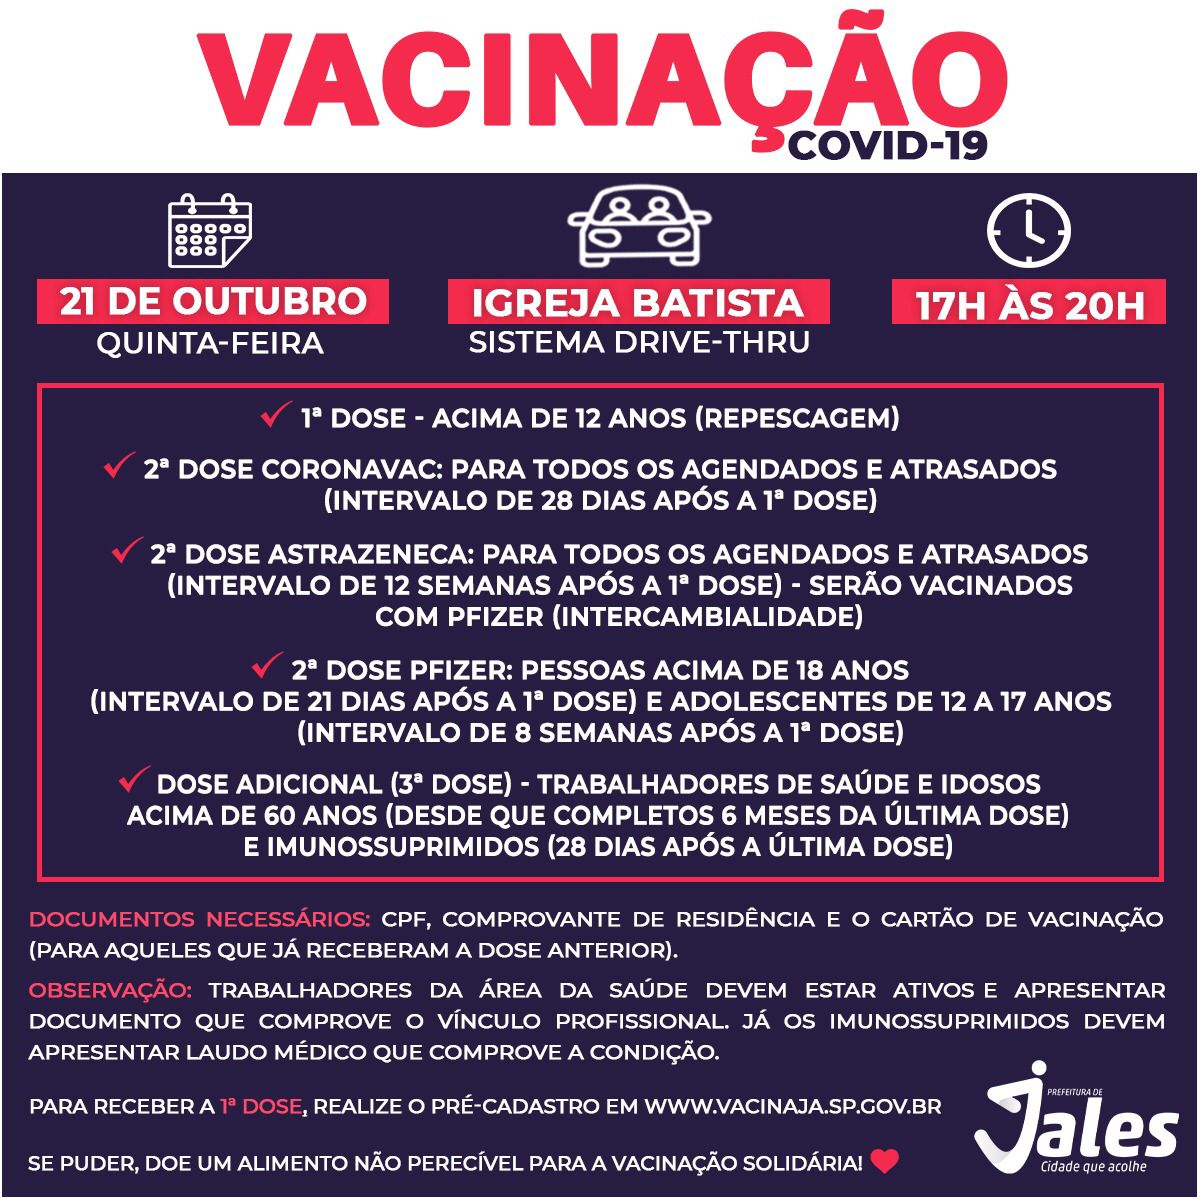 Nesta quinta-feira, 21 de outubro, haverá mais um drive-thru para reforçar a campanha de vacinação contra a covid-19 em Jales.